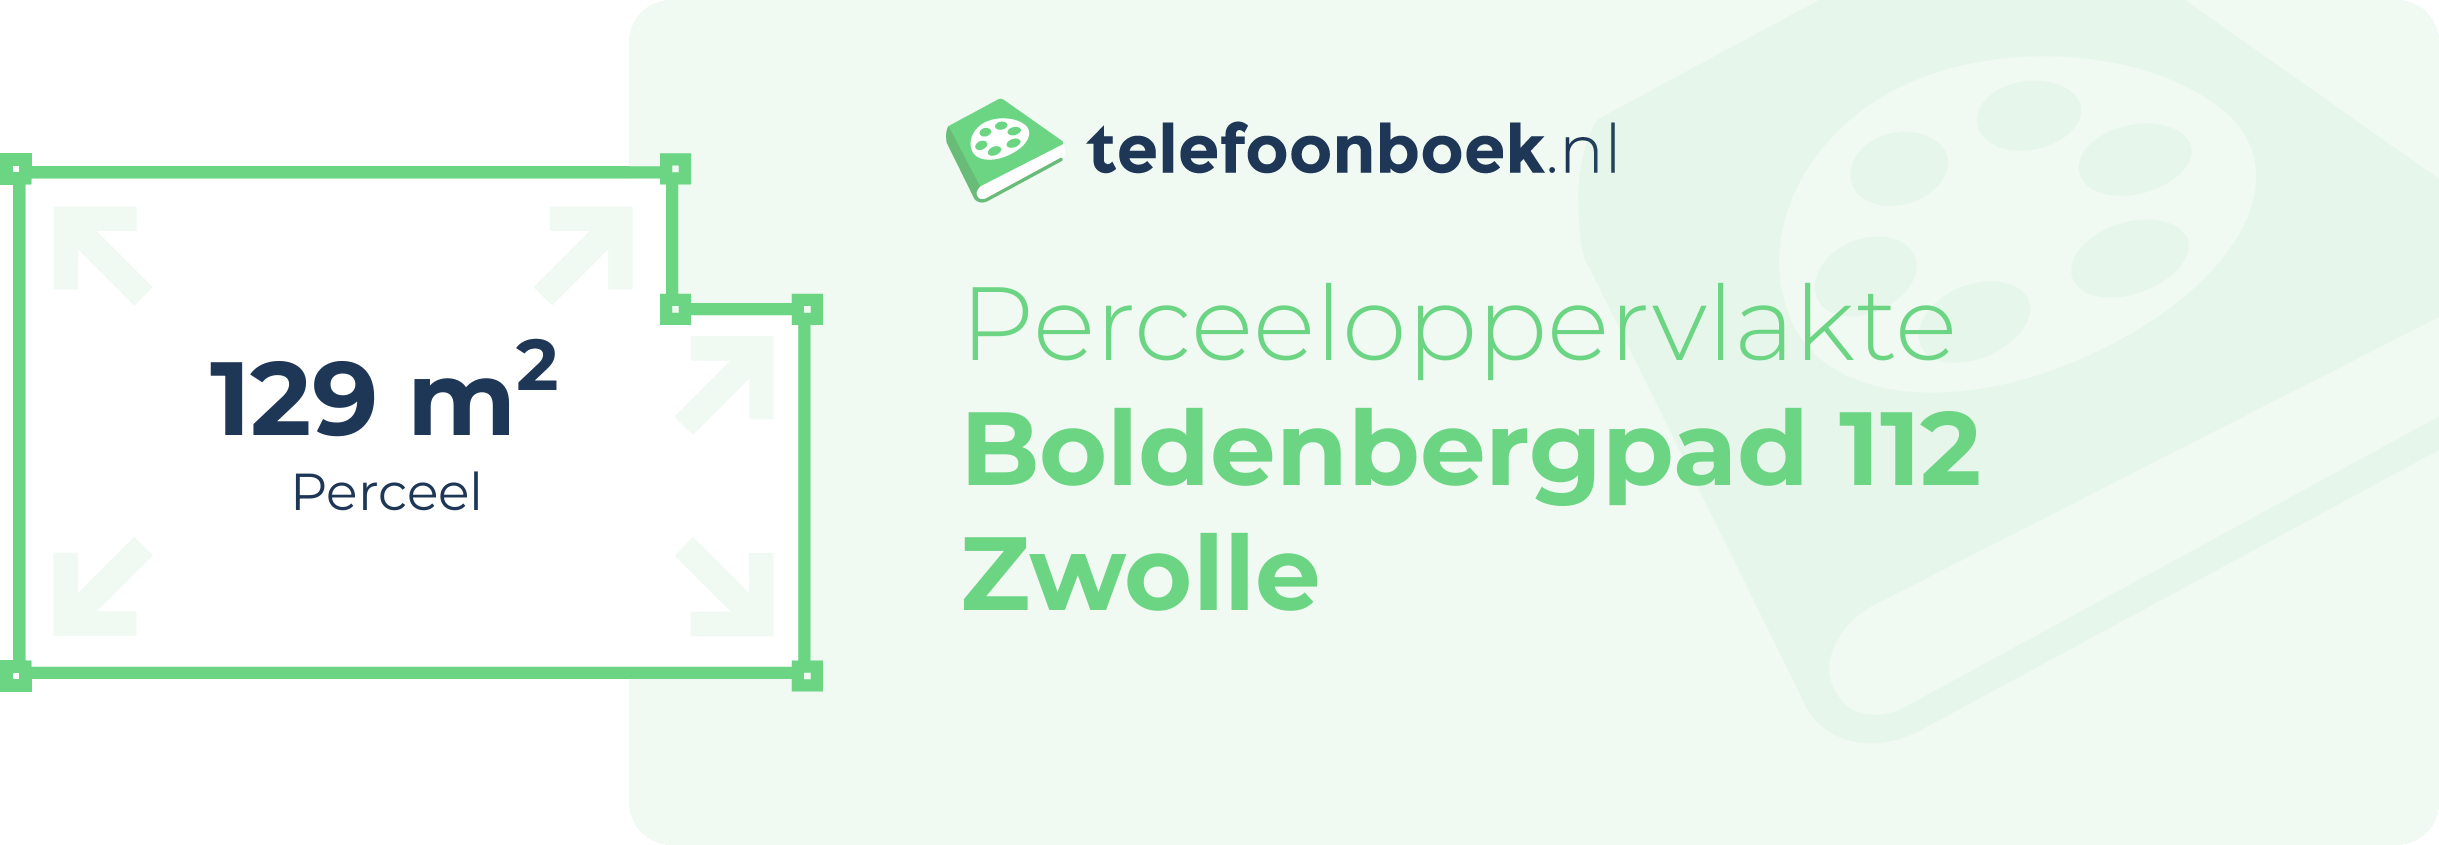 Perceeloppervlakte Boldenbergpad 112 Zwolle